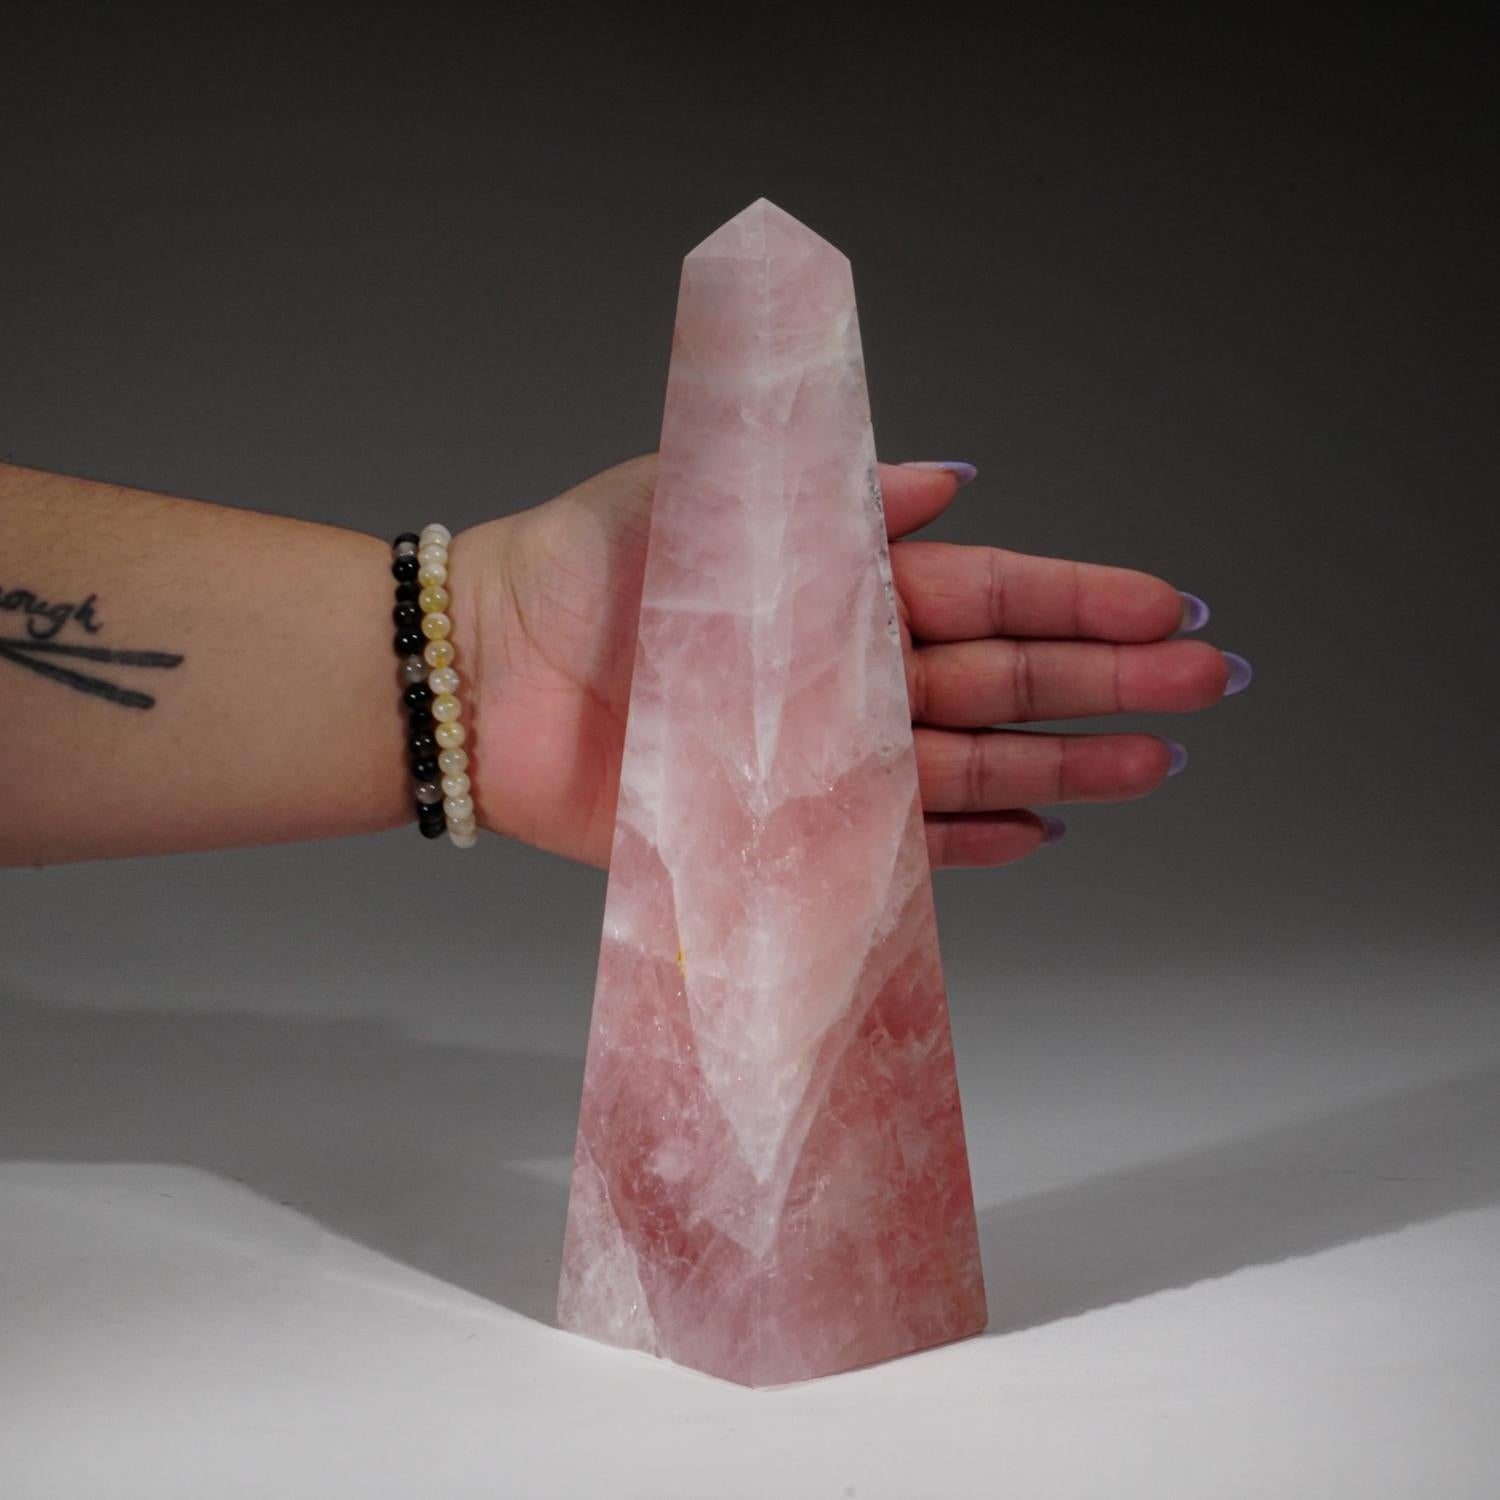 AAA-Qualität Edelstein transparent poliert brasilianischen Rosenquarz Obelisk aus Brasilien. Dieses natürliche Exemplar hat eine super-rosa Farbe und eine hochglanzpolierte Spiegelfläche. 

Der Rosenquarz ist der Stein der bedingungslosen Liebe. Als